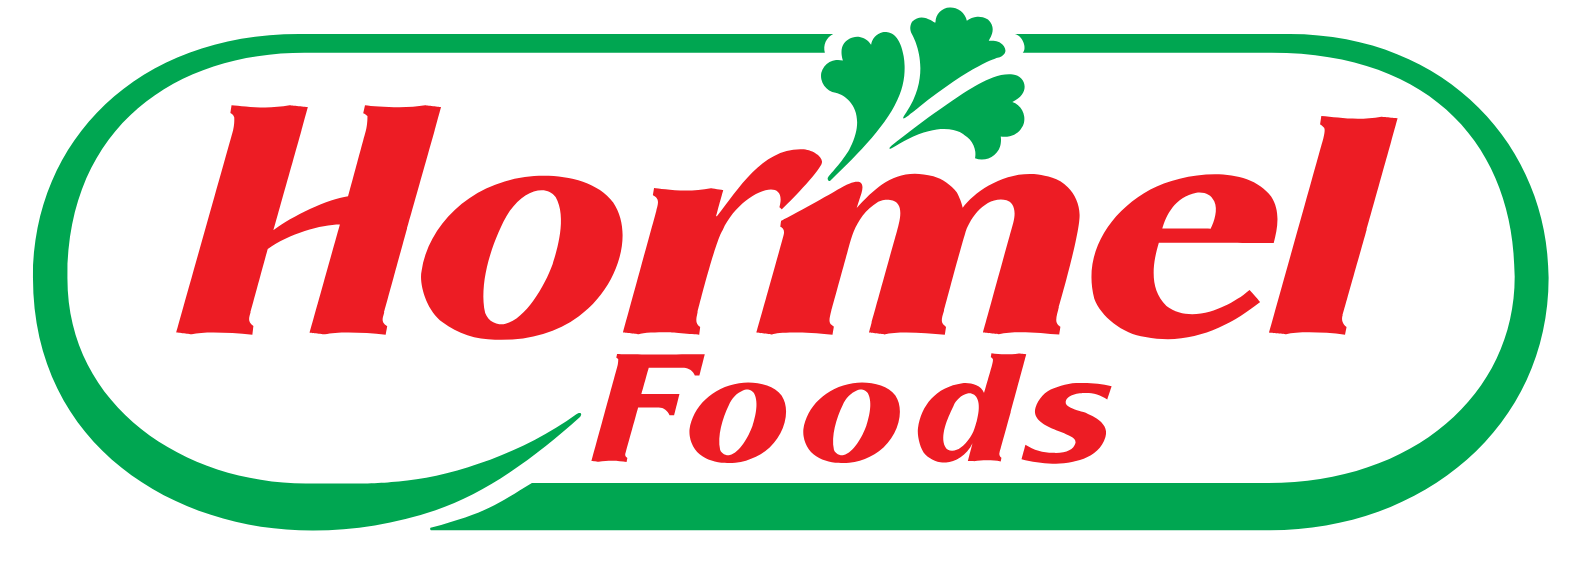 Hormel Foods logo (transparent PNG)